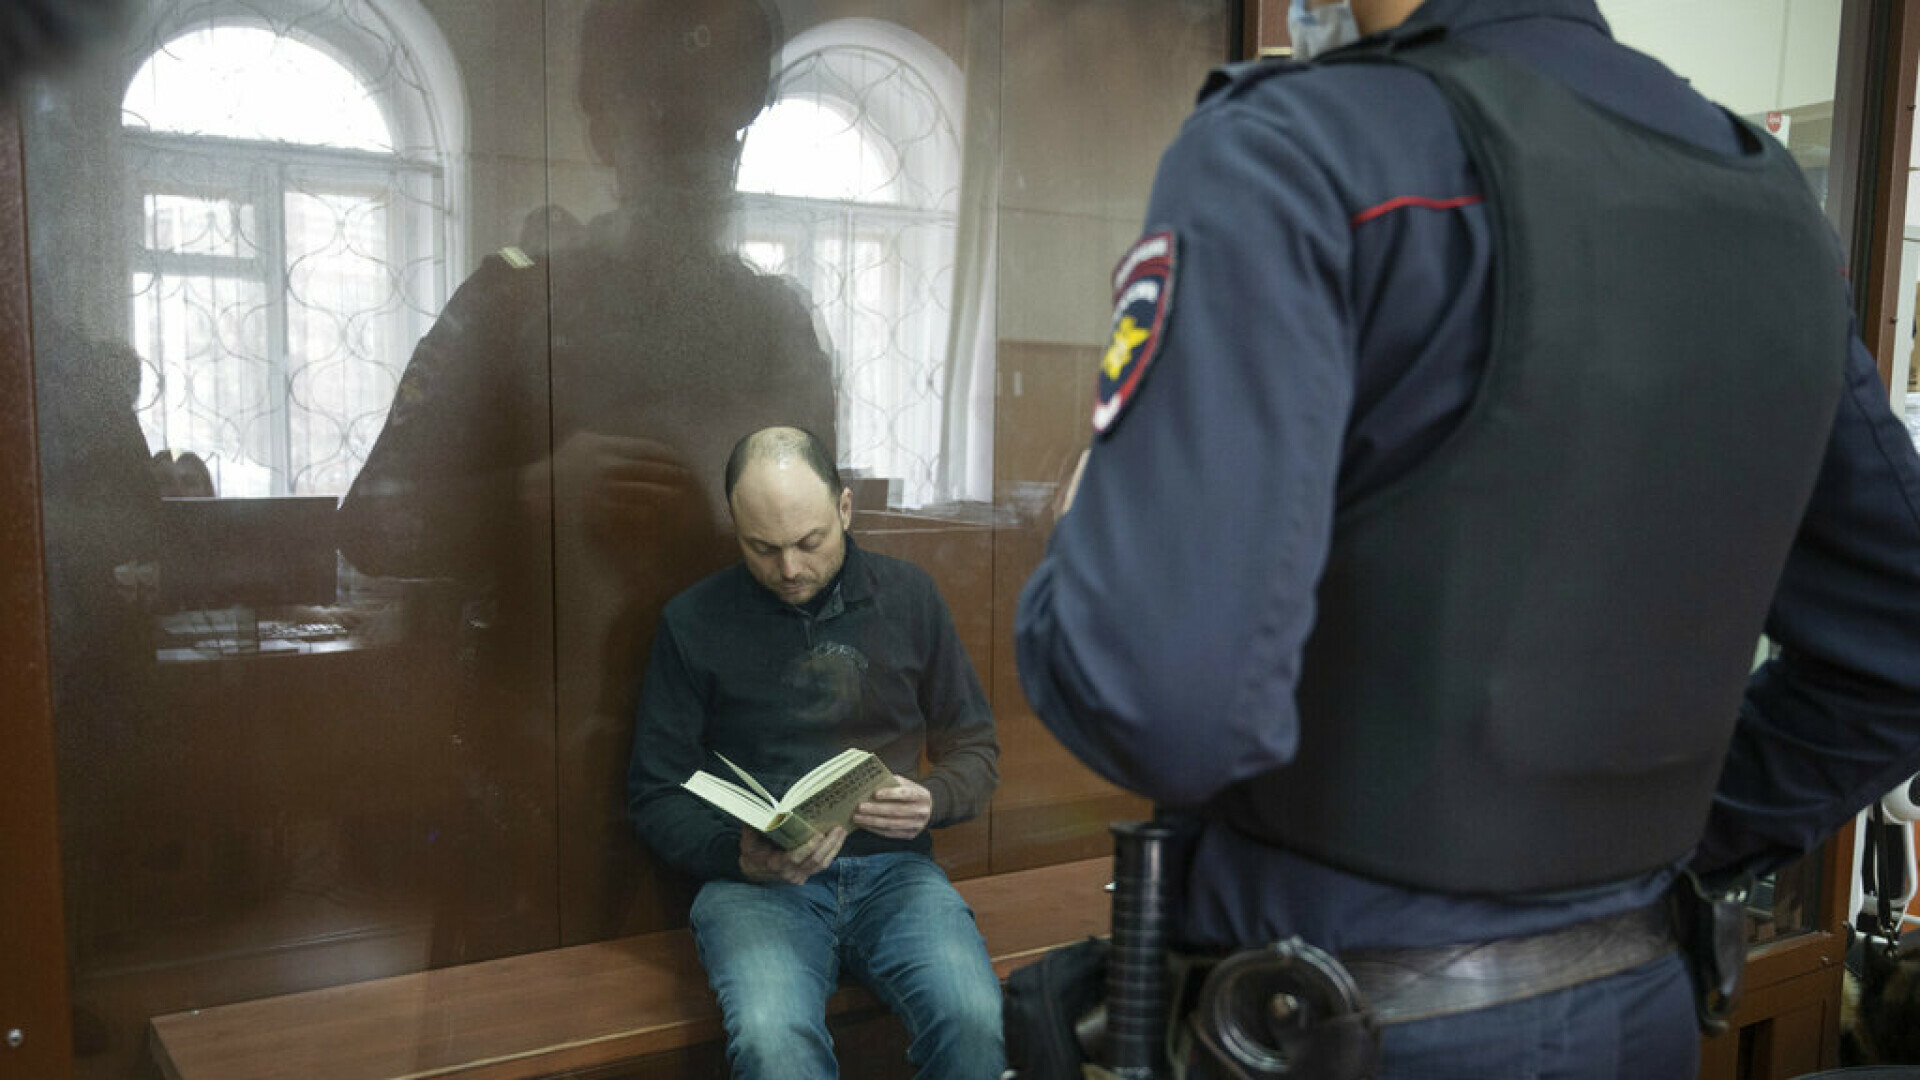 Vodeći Putinov kritičar osuđen na 25 godina zatvora zbog izdaje: “Potpisujem svaku riječ koju sam rekao, ne kažem se”